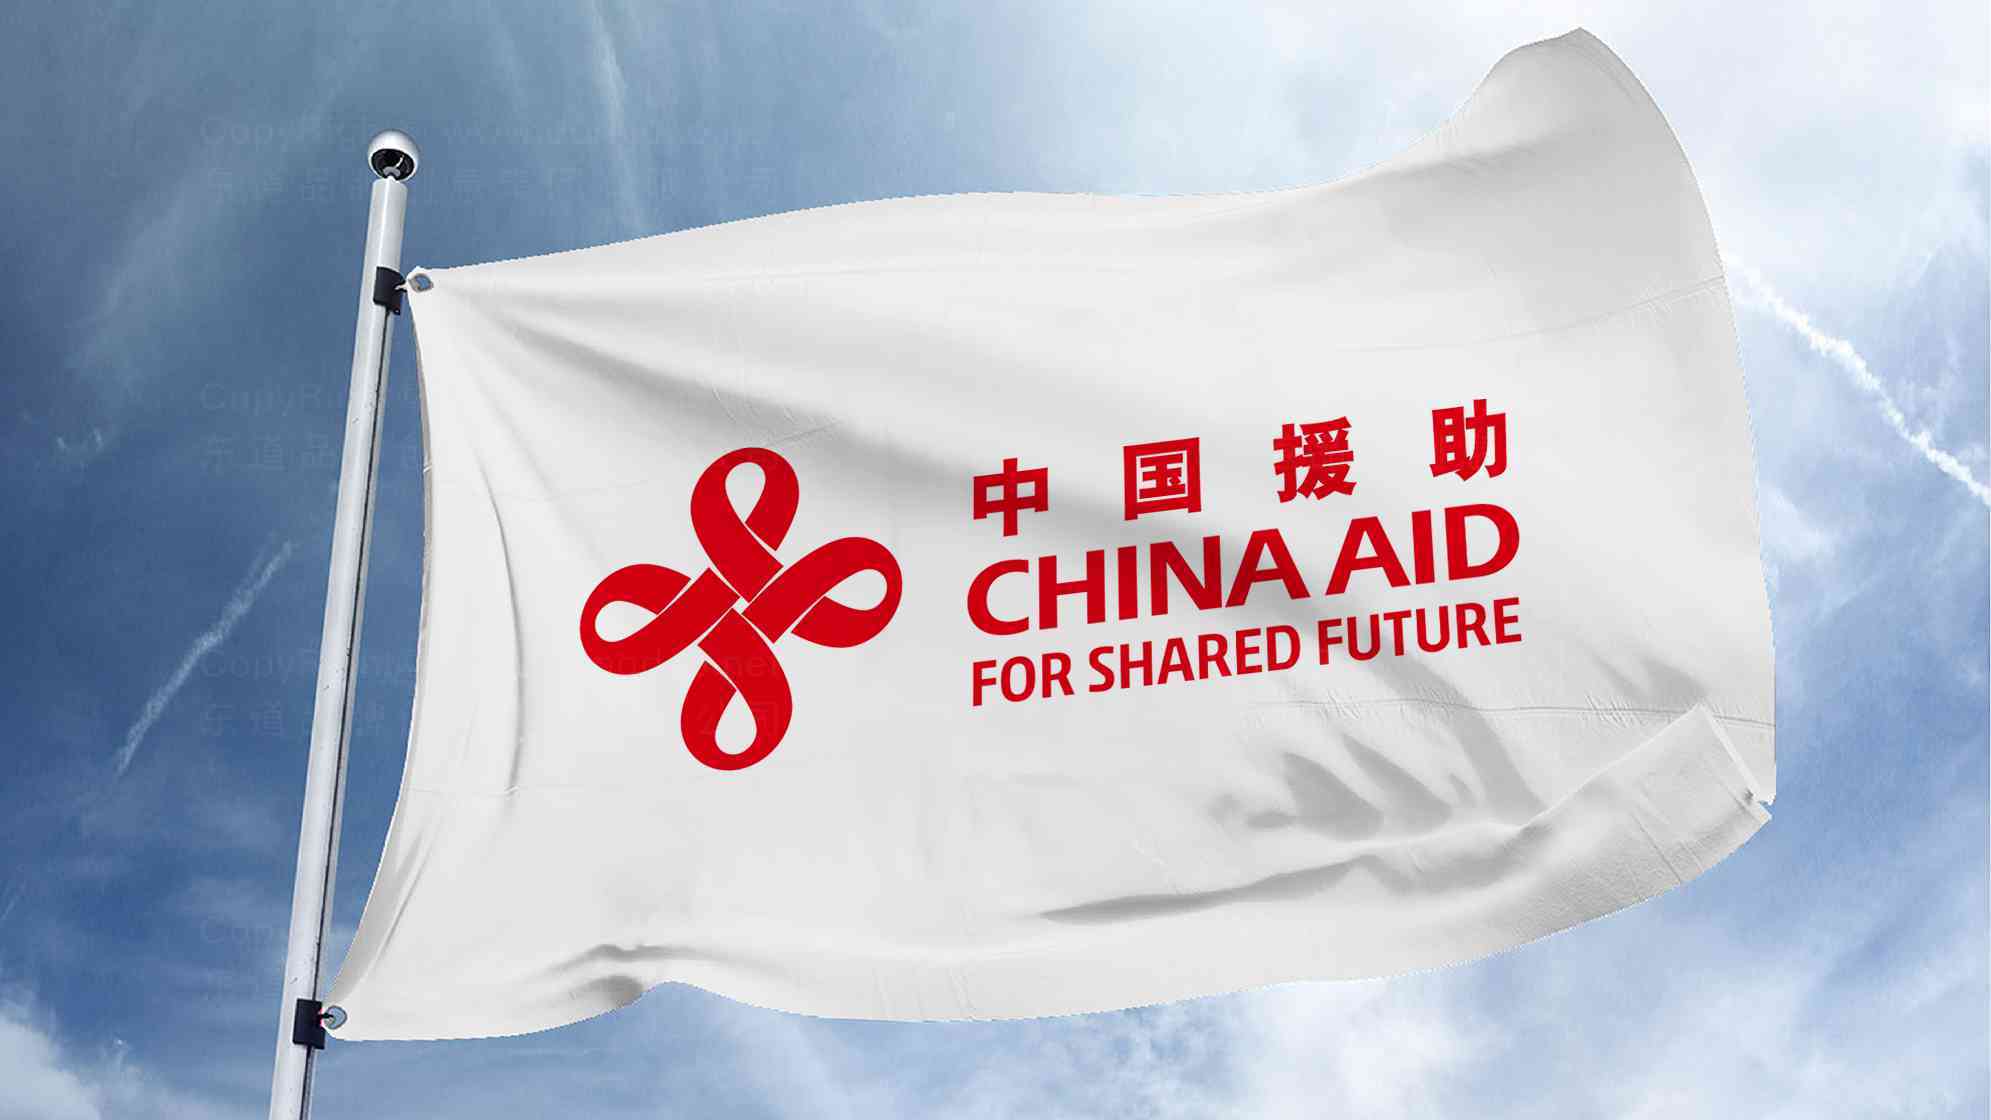 中国援助logo设计图片素材